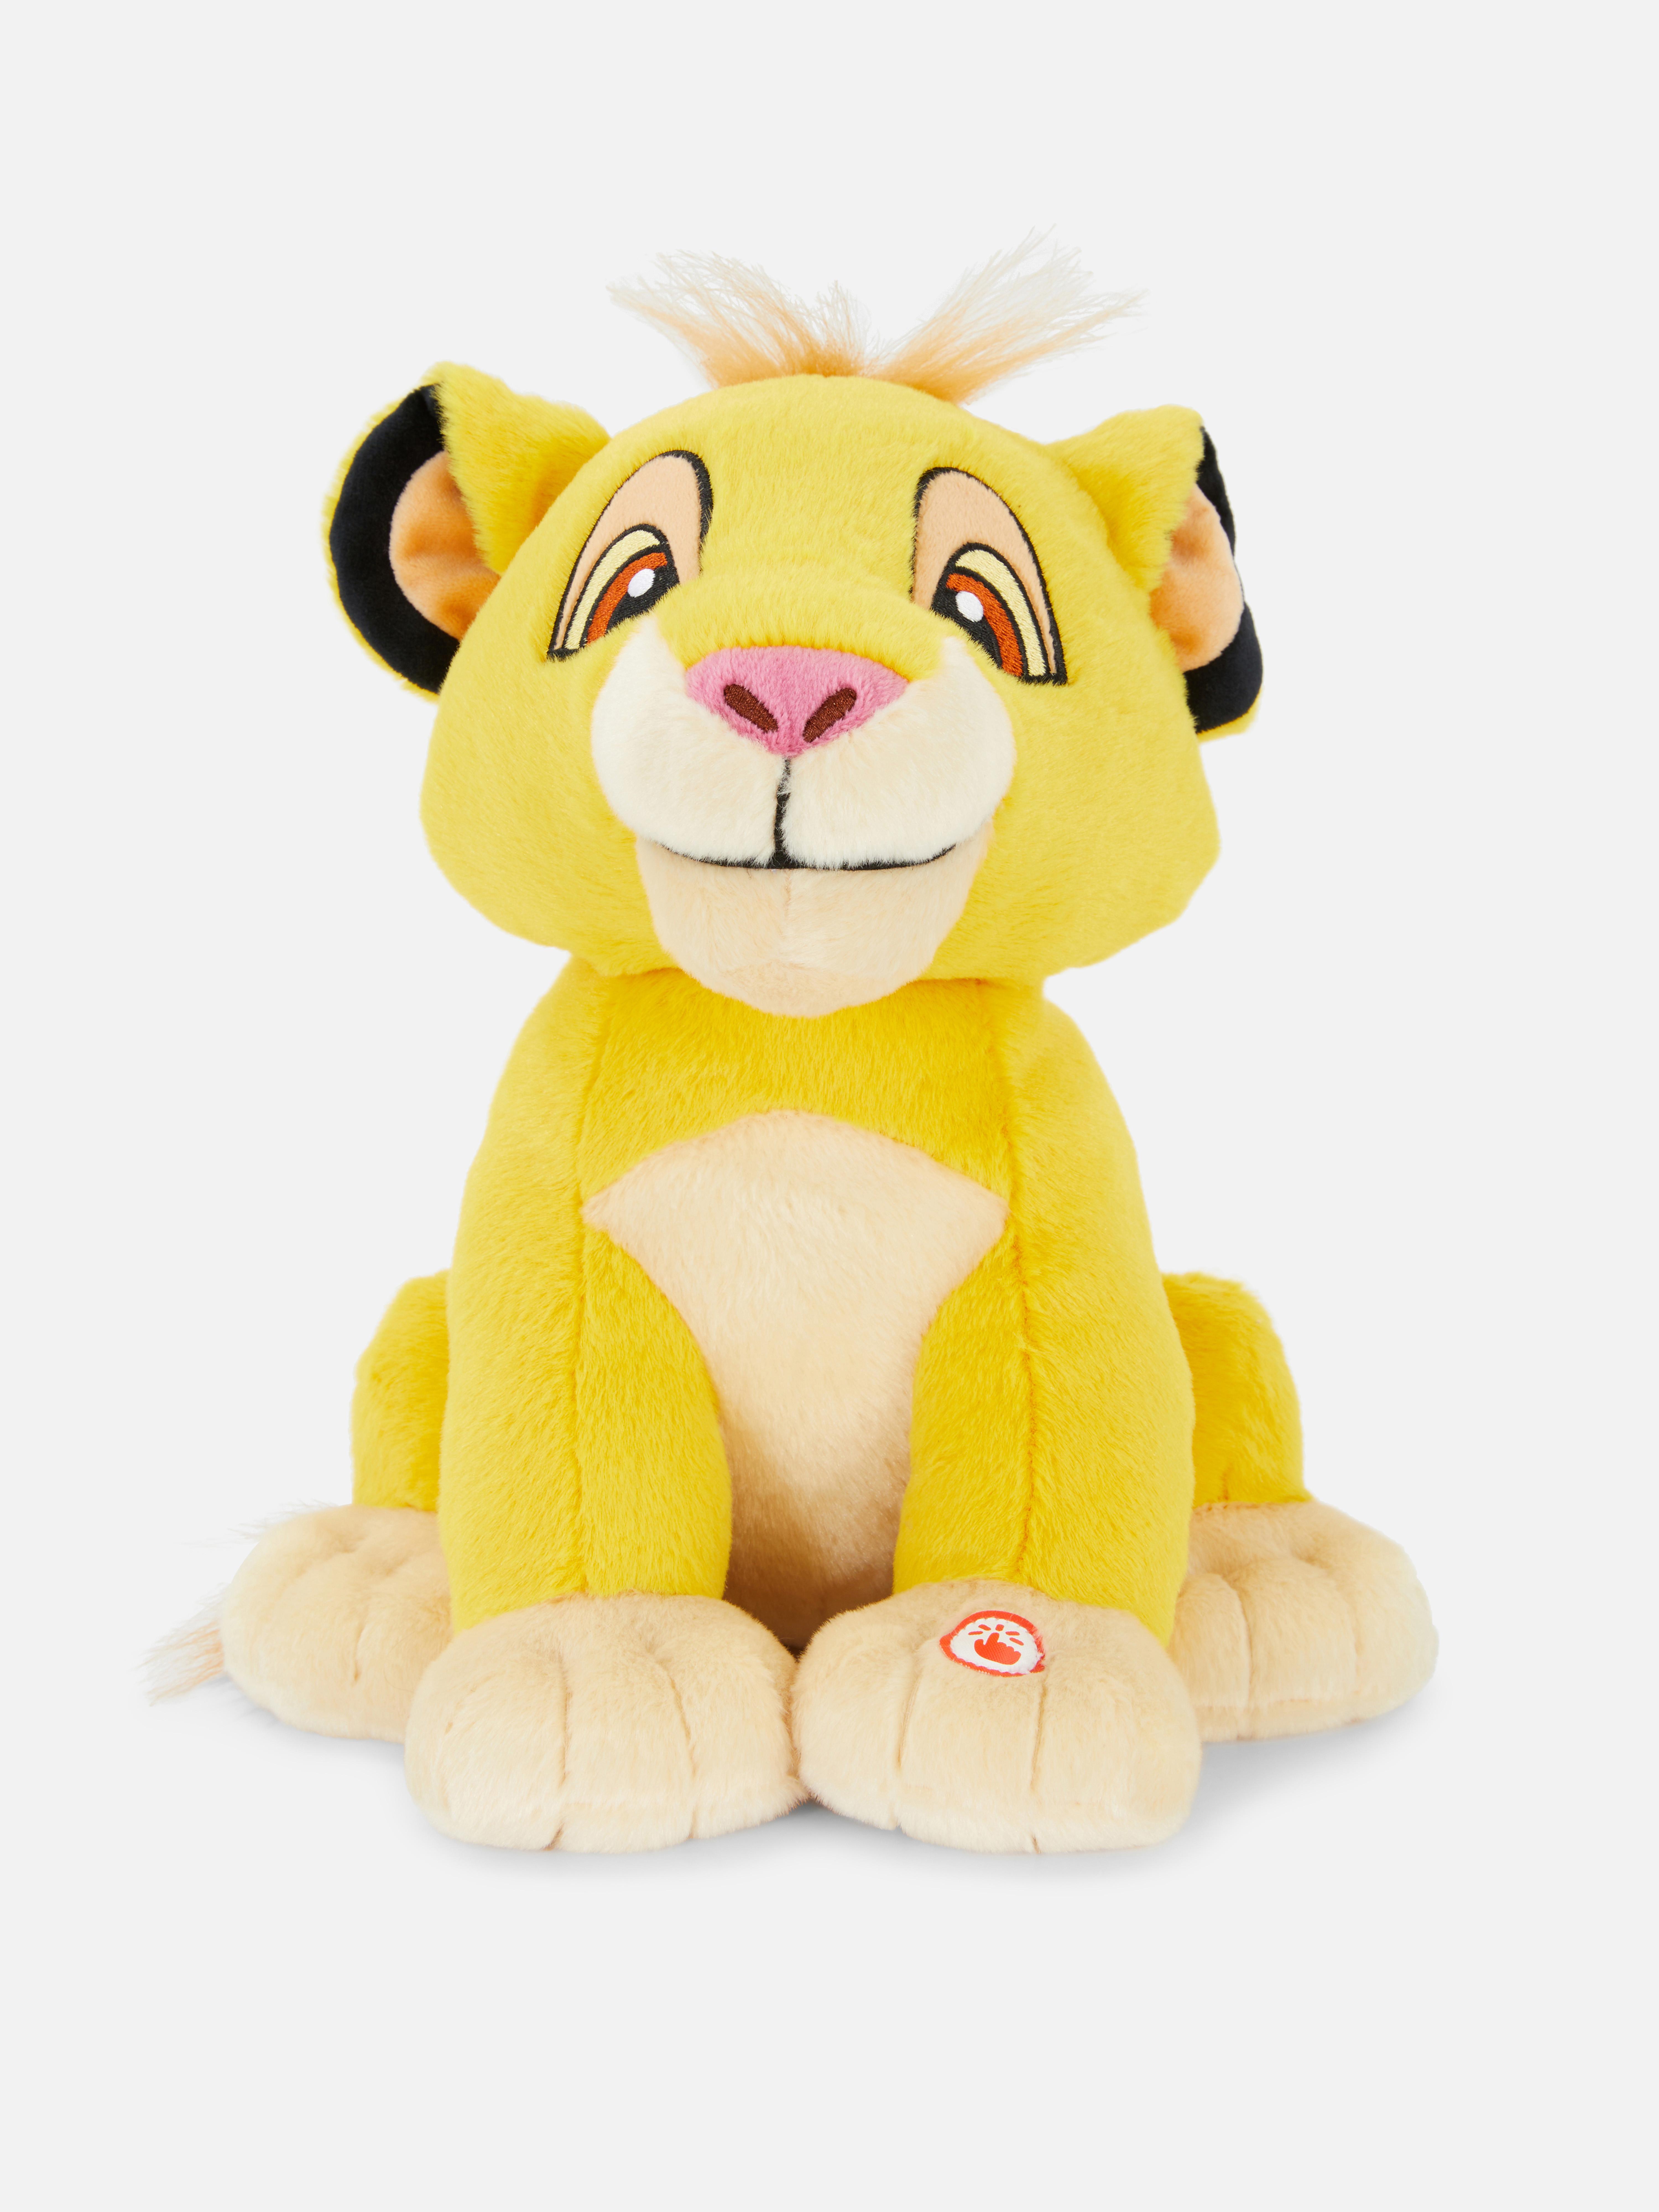 Disney’s The Lion King Simba Plush Toy